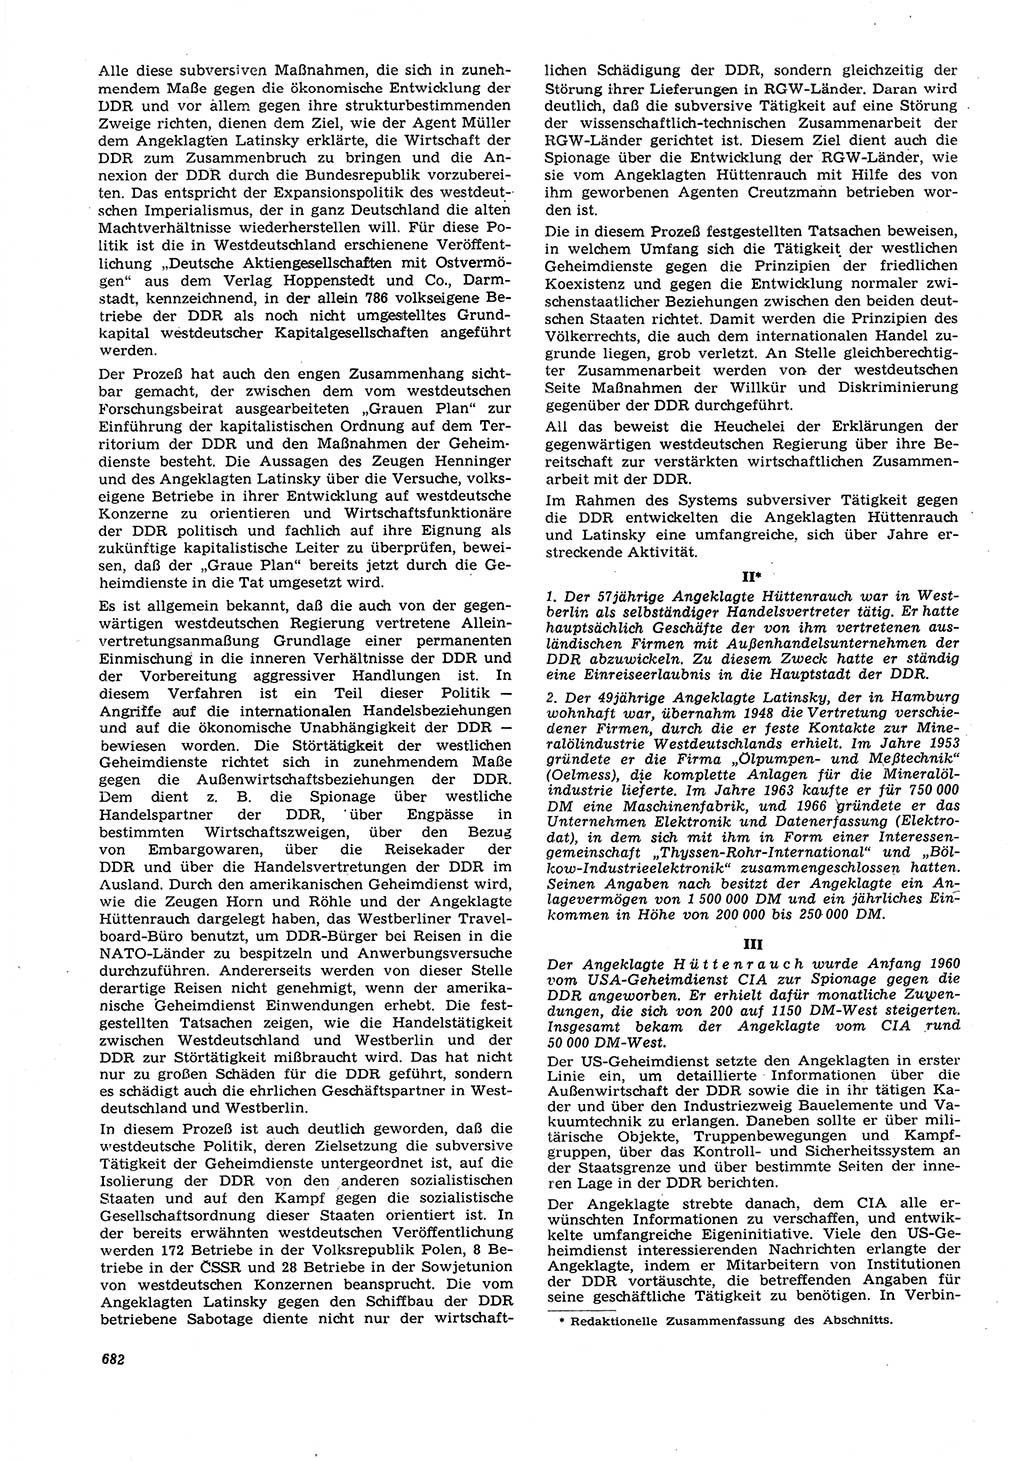 Neue Justiz (NJ), Zeitschrift für Recht und Rechtswissenschaft [Deutsche Demokratische Republik (DDR)], 21. Jahrgang 1967, Seite 682 (NJ DDR 1967, S. 682)